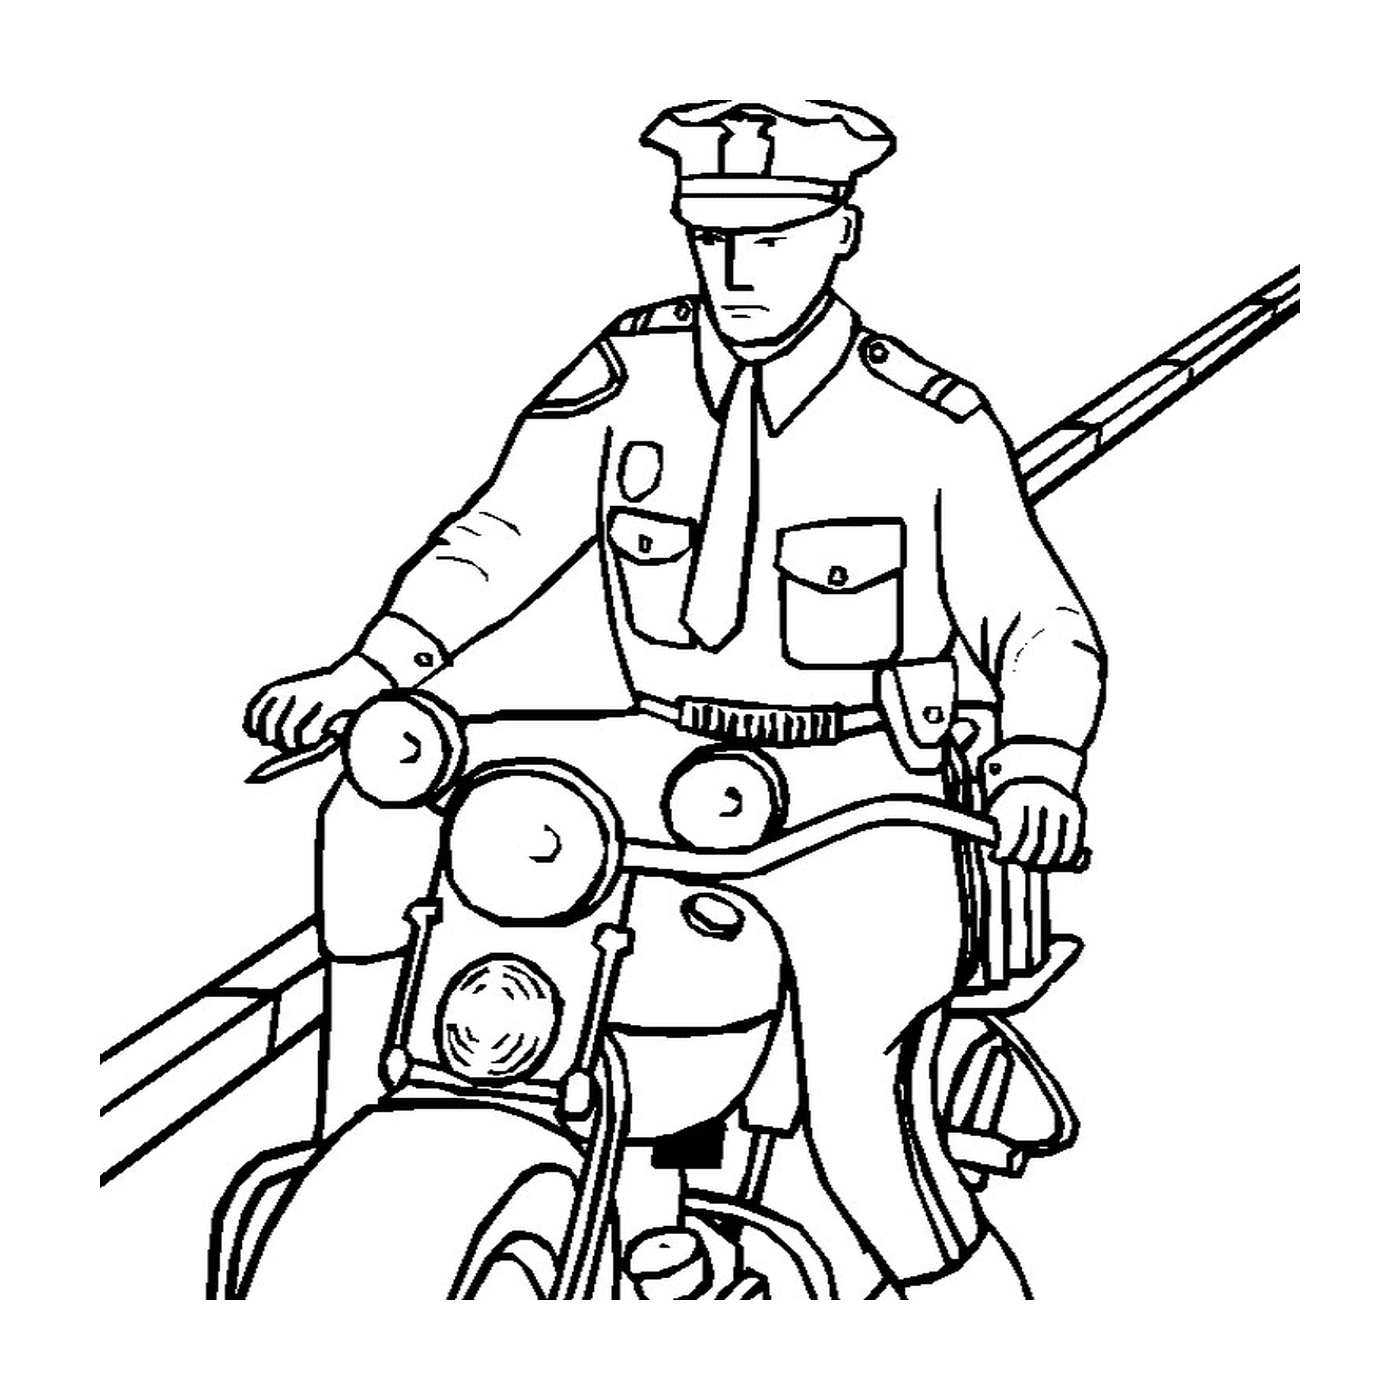  Motocicletta della polizia veloce 